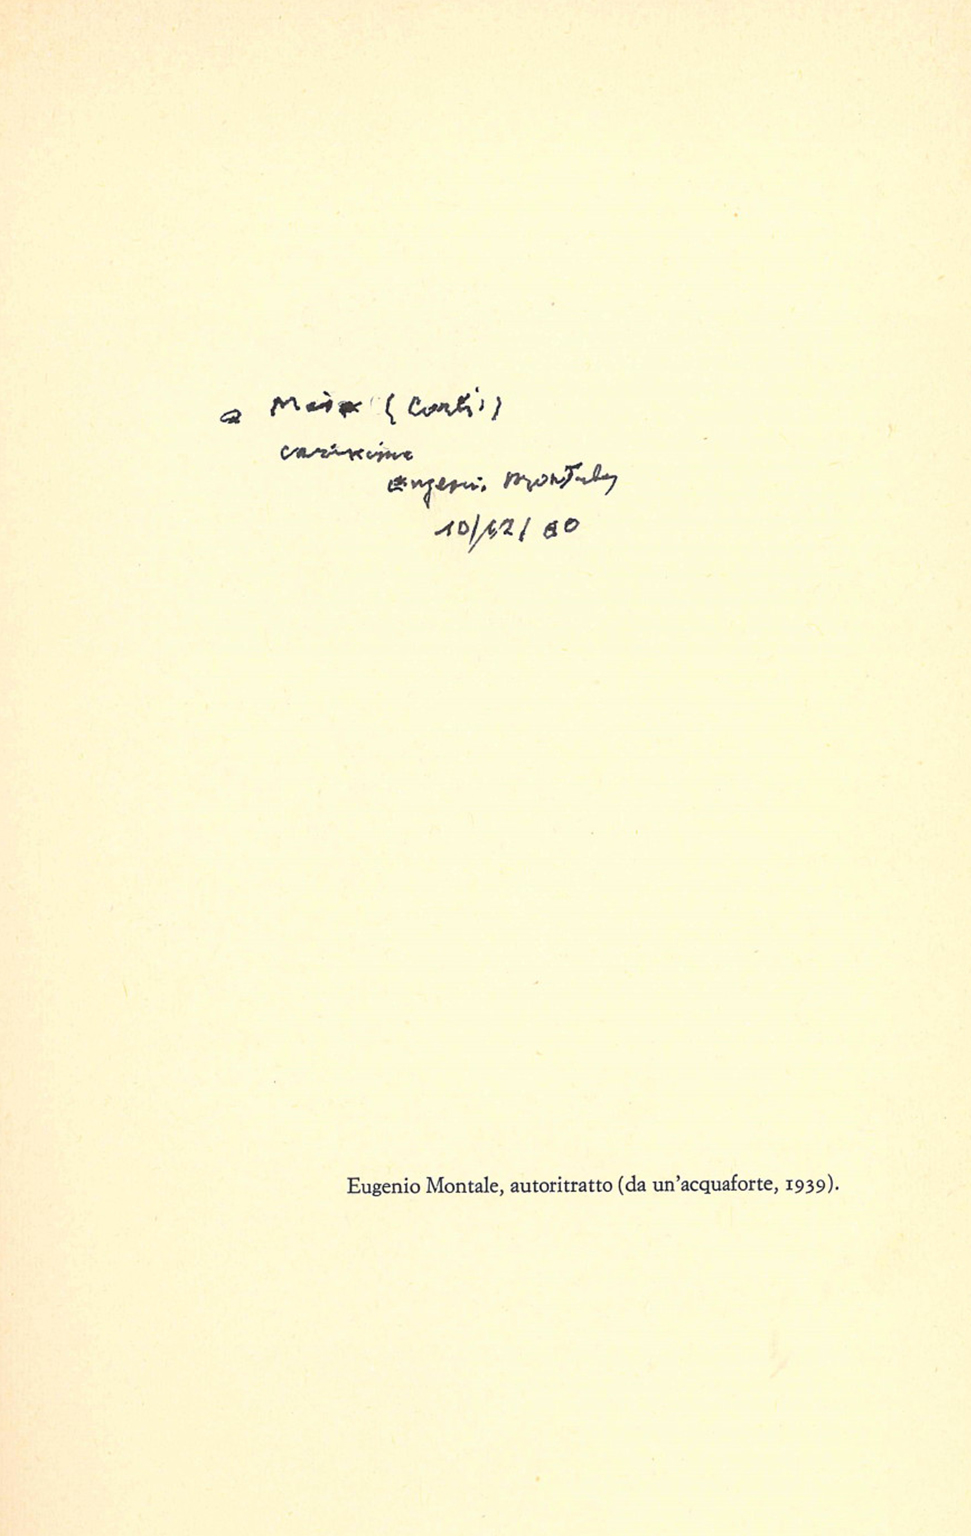 Eugenio Montale, L’opera in versi (1980)